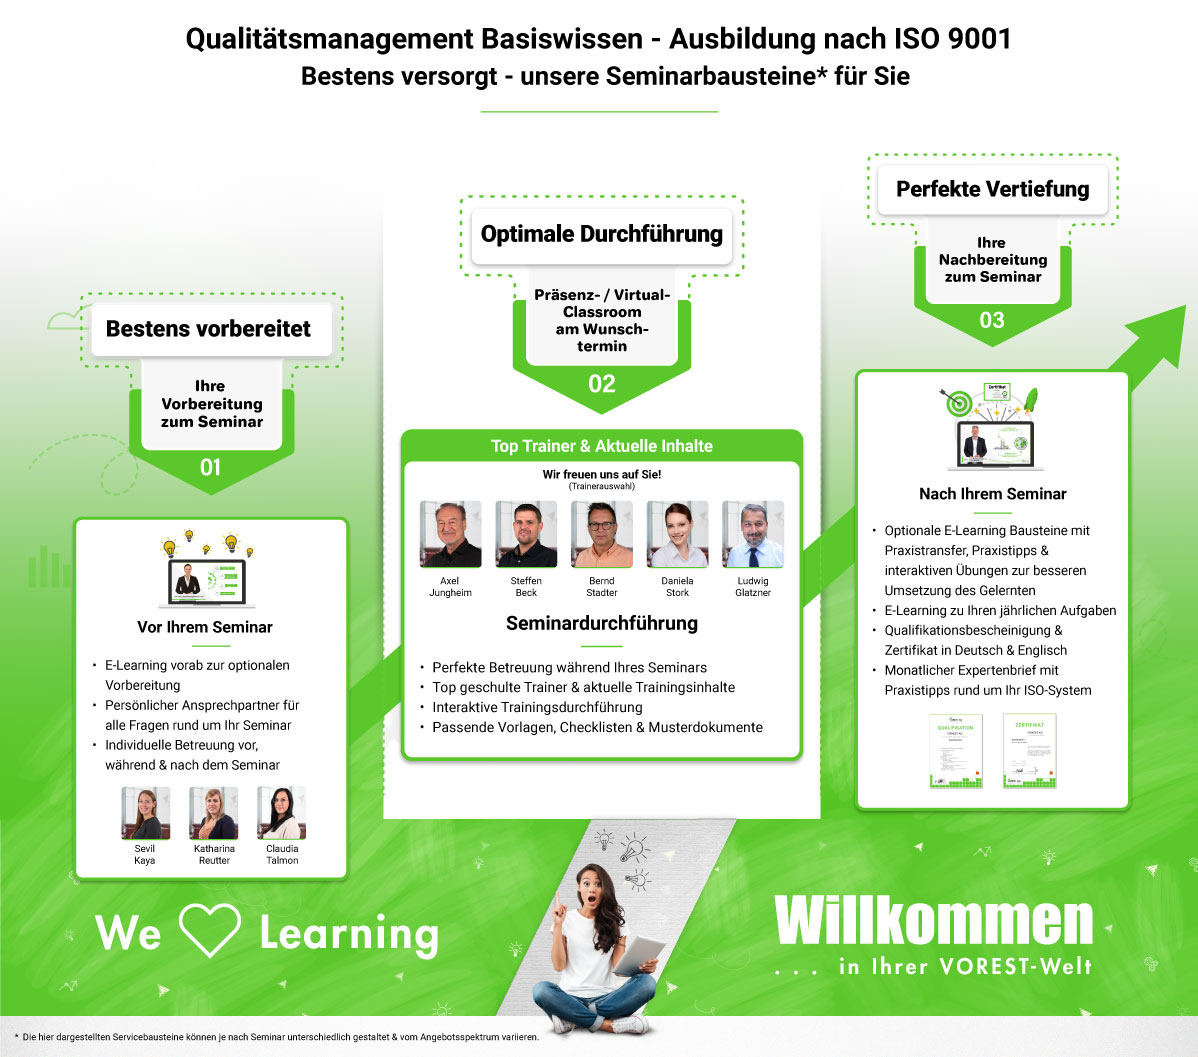 Qualitätsmanagement Basiswissen - Ausbildung nach ISO 9001